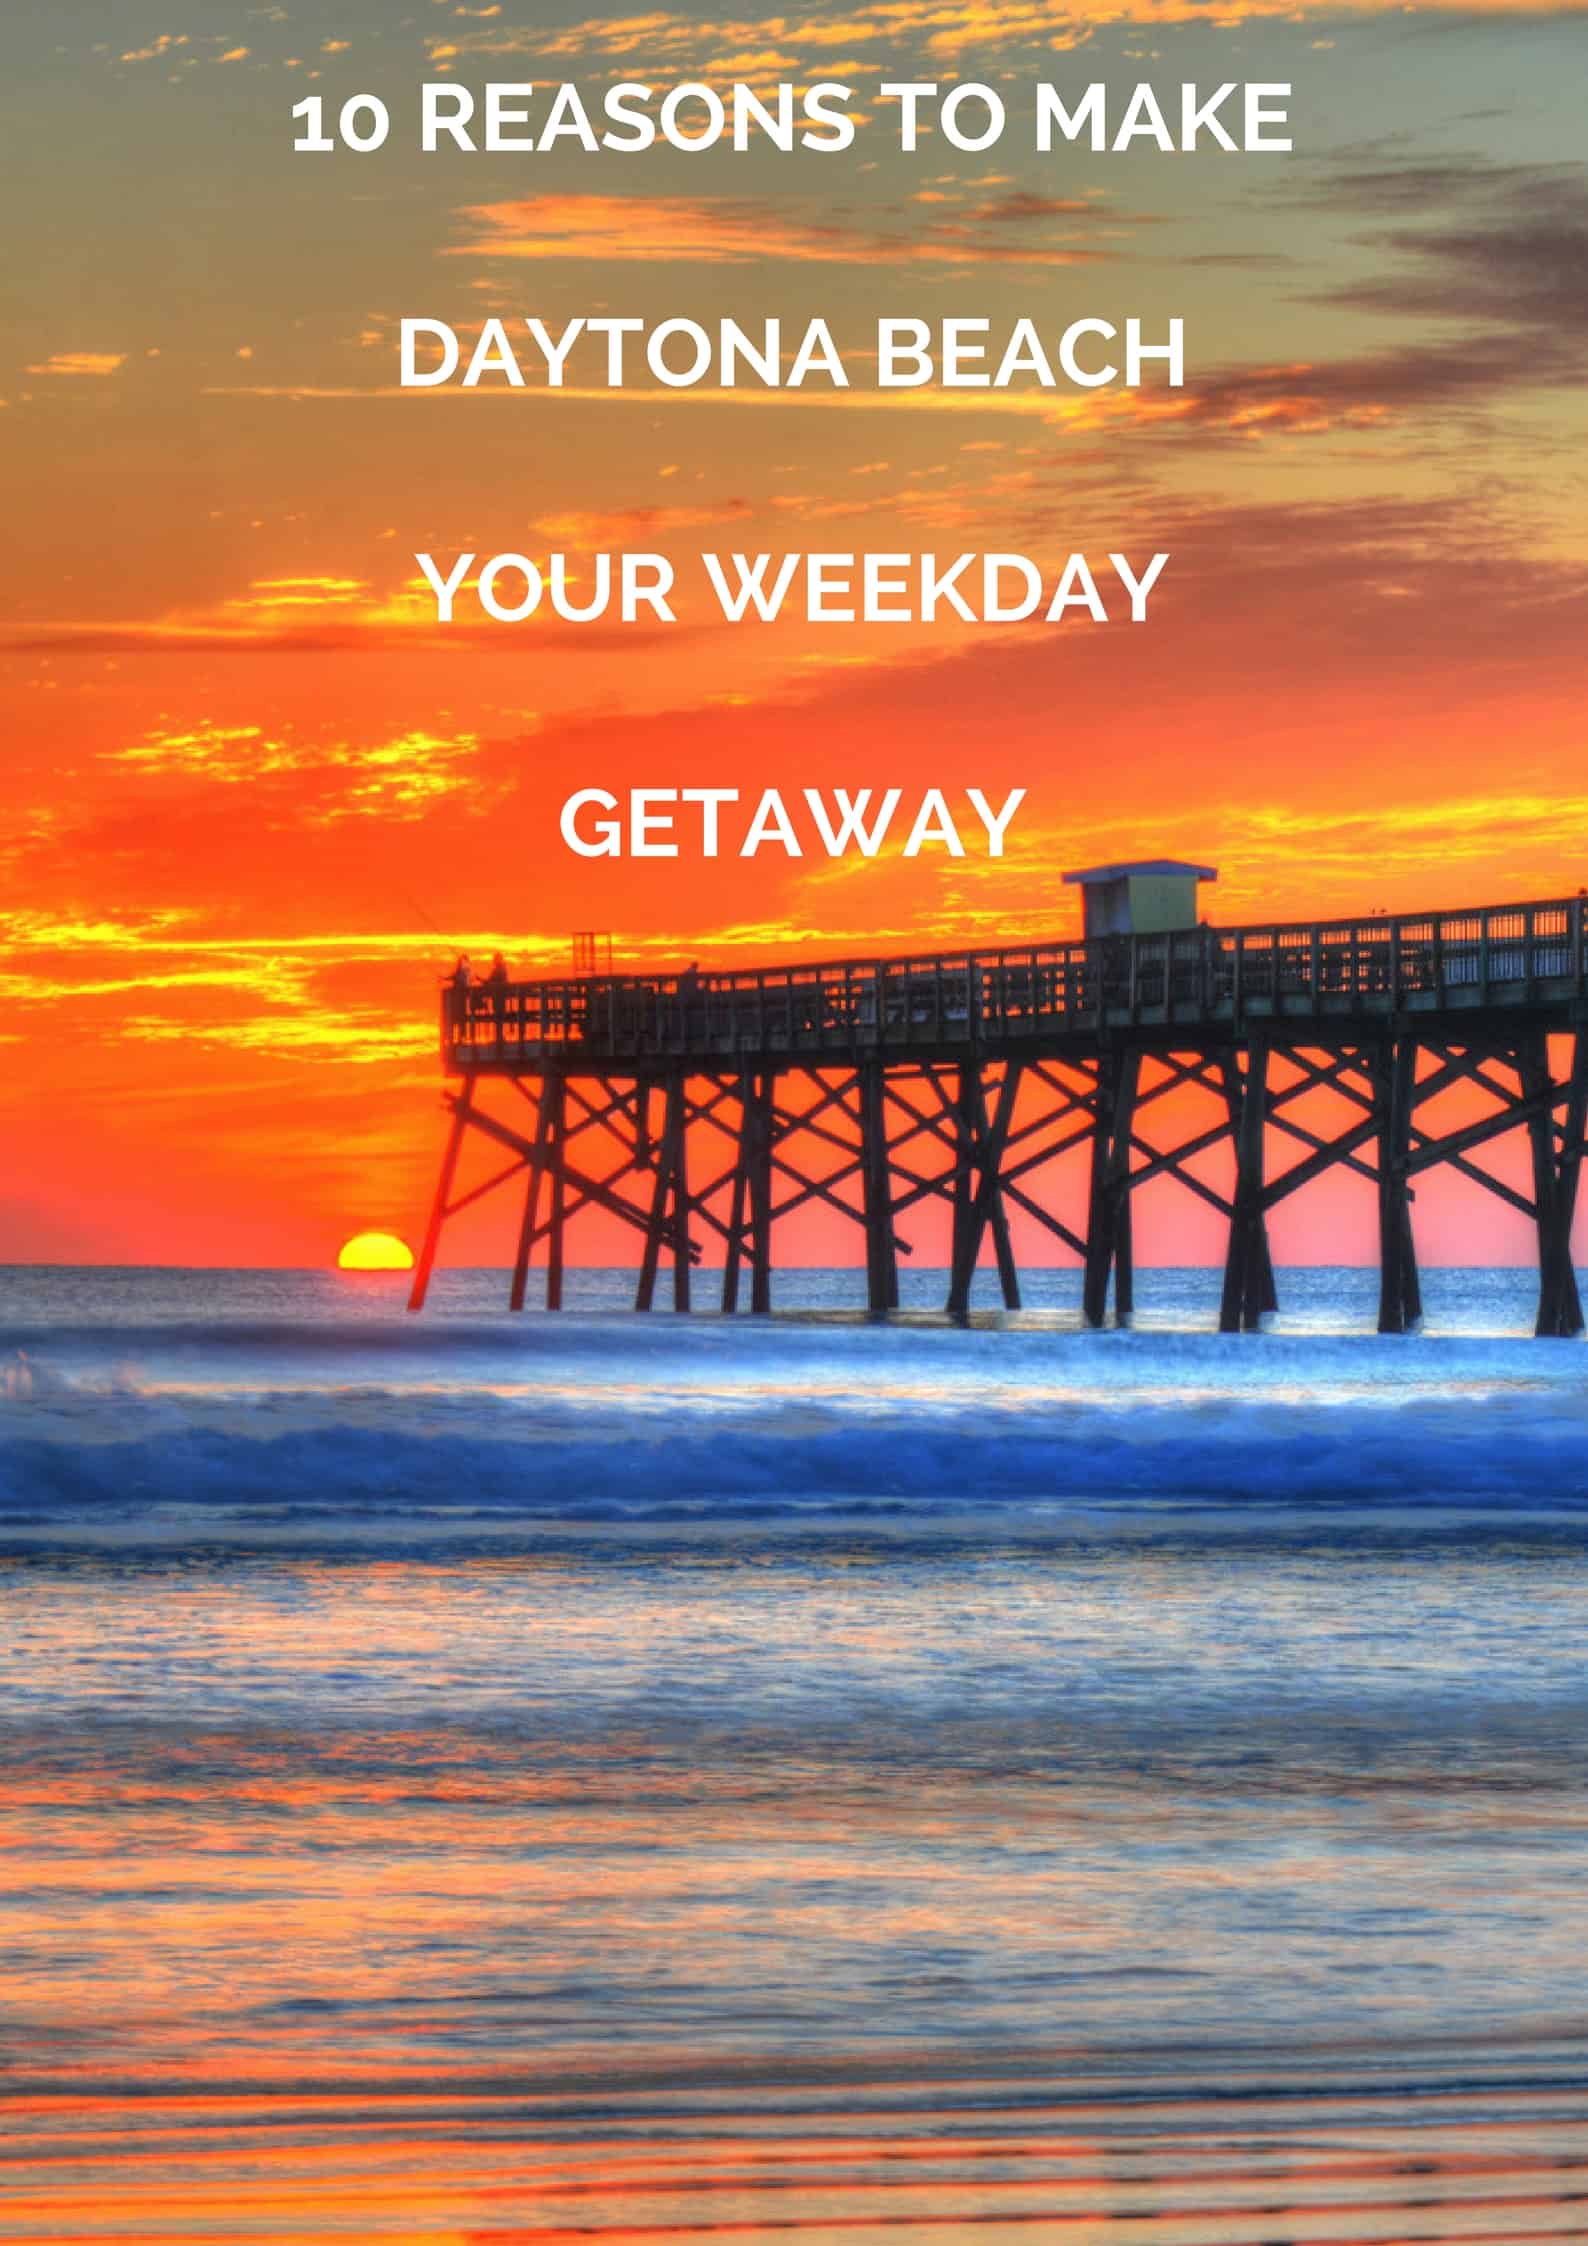 10 Reasons To Make Daytona Beach Your Weekday Getaway! #WeekdayGetaway #DaytonaBeach #ad